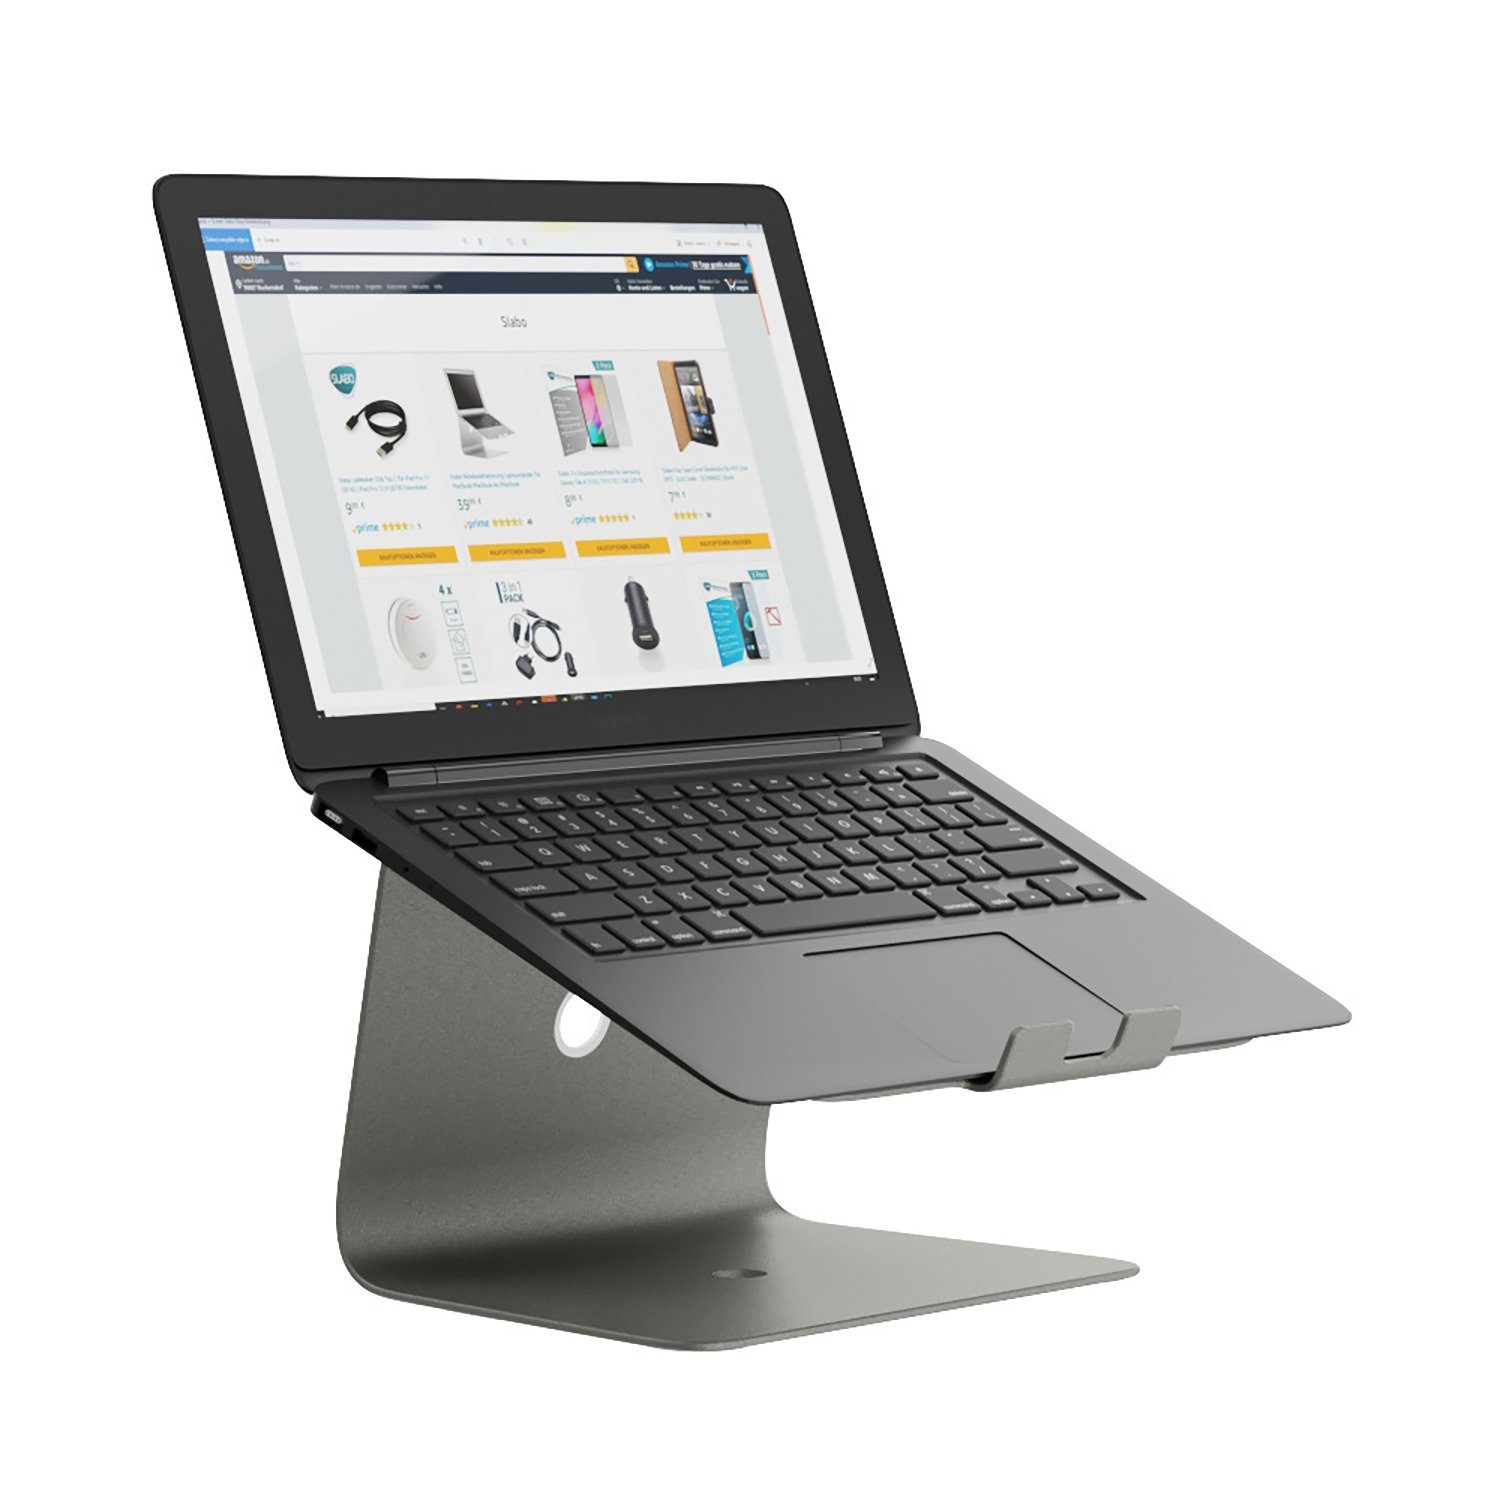 SLABO Notebookhalterung Laptopständer für MacBook, MacBook Air, MacBook  Pro, Notebooks, Laptops "Aluminium" - SPACE GREY / GRAU Laptop-Ständer